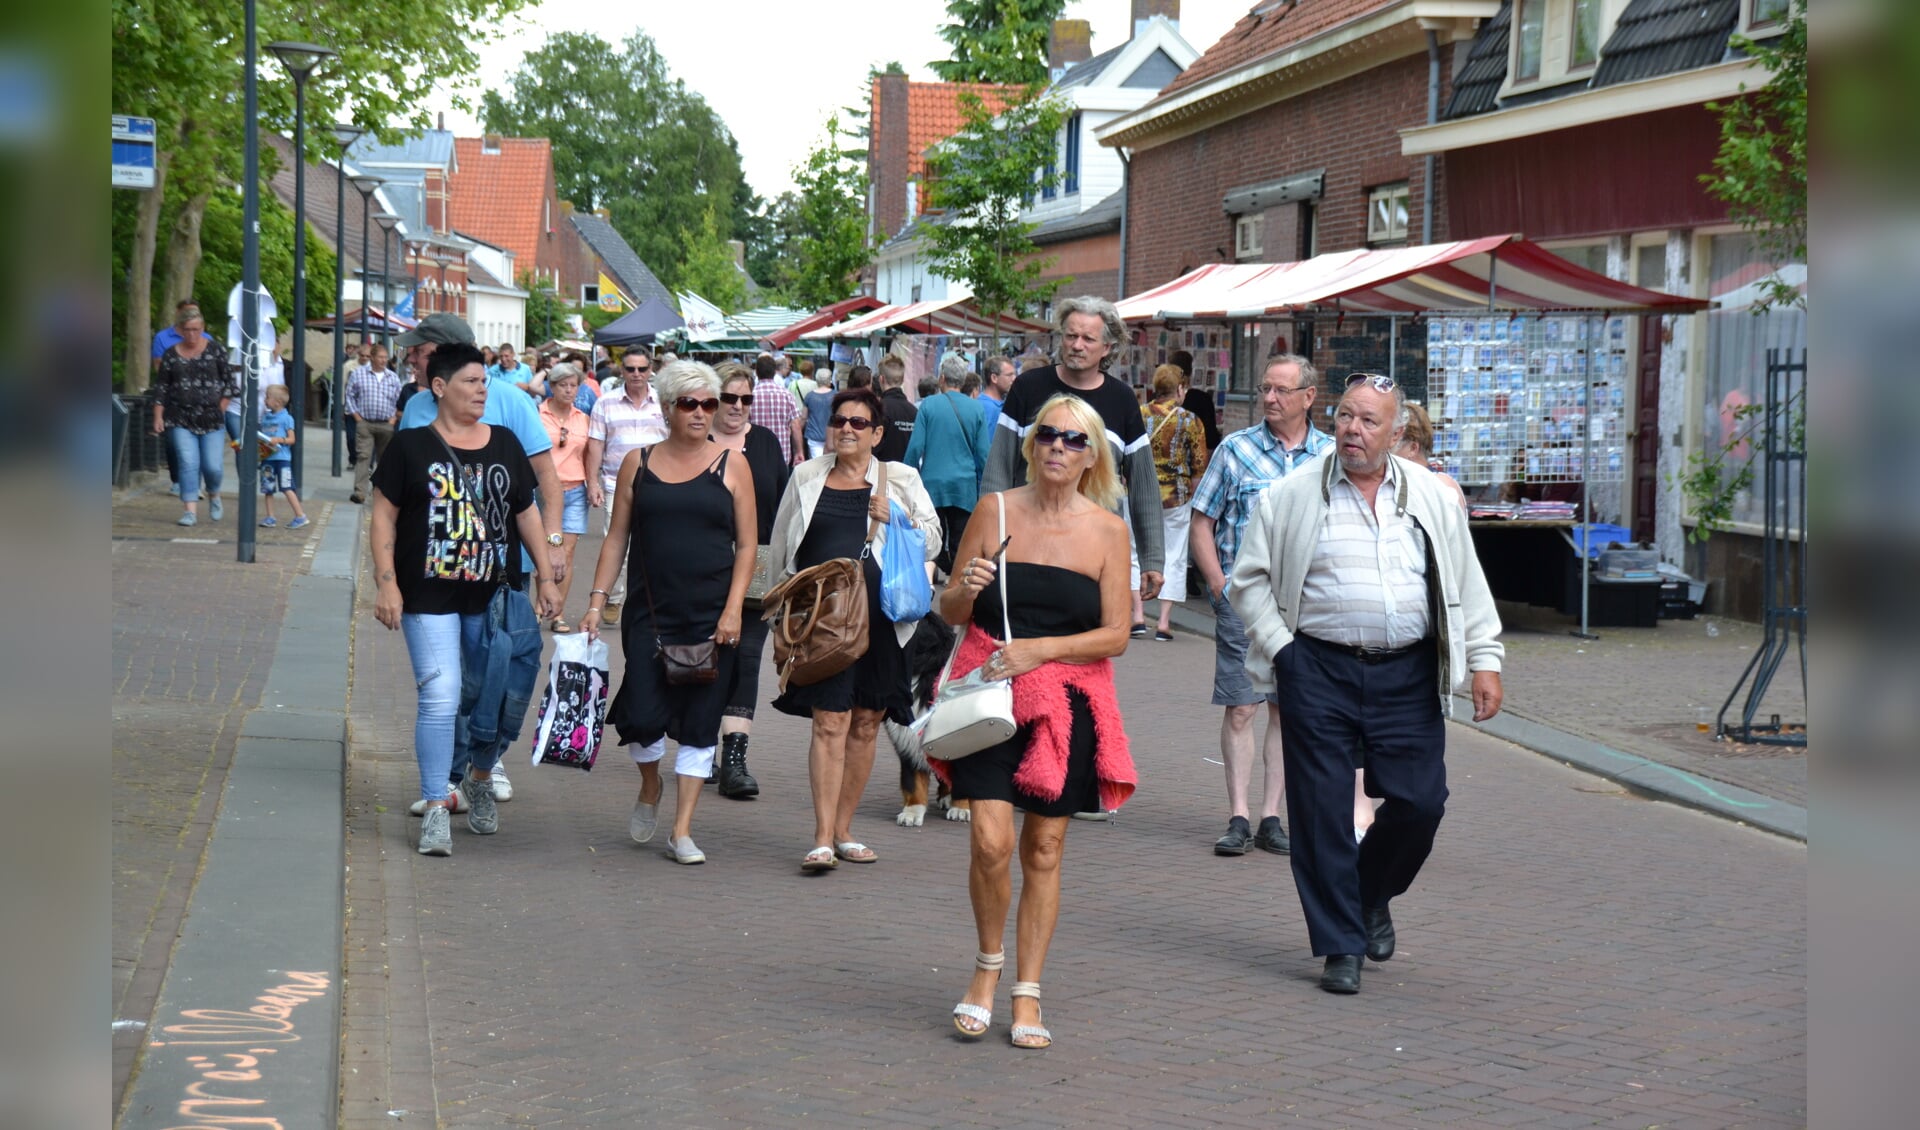 Ook de altijd drukbezochte Pinksterbraderie in het dorp Lepelstraat is het vermelden op de evenementenkalender meer dan waard. Intussen is het juiste overzicht door de gemeente verspreid. 